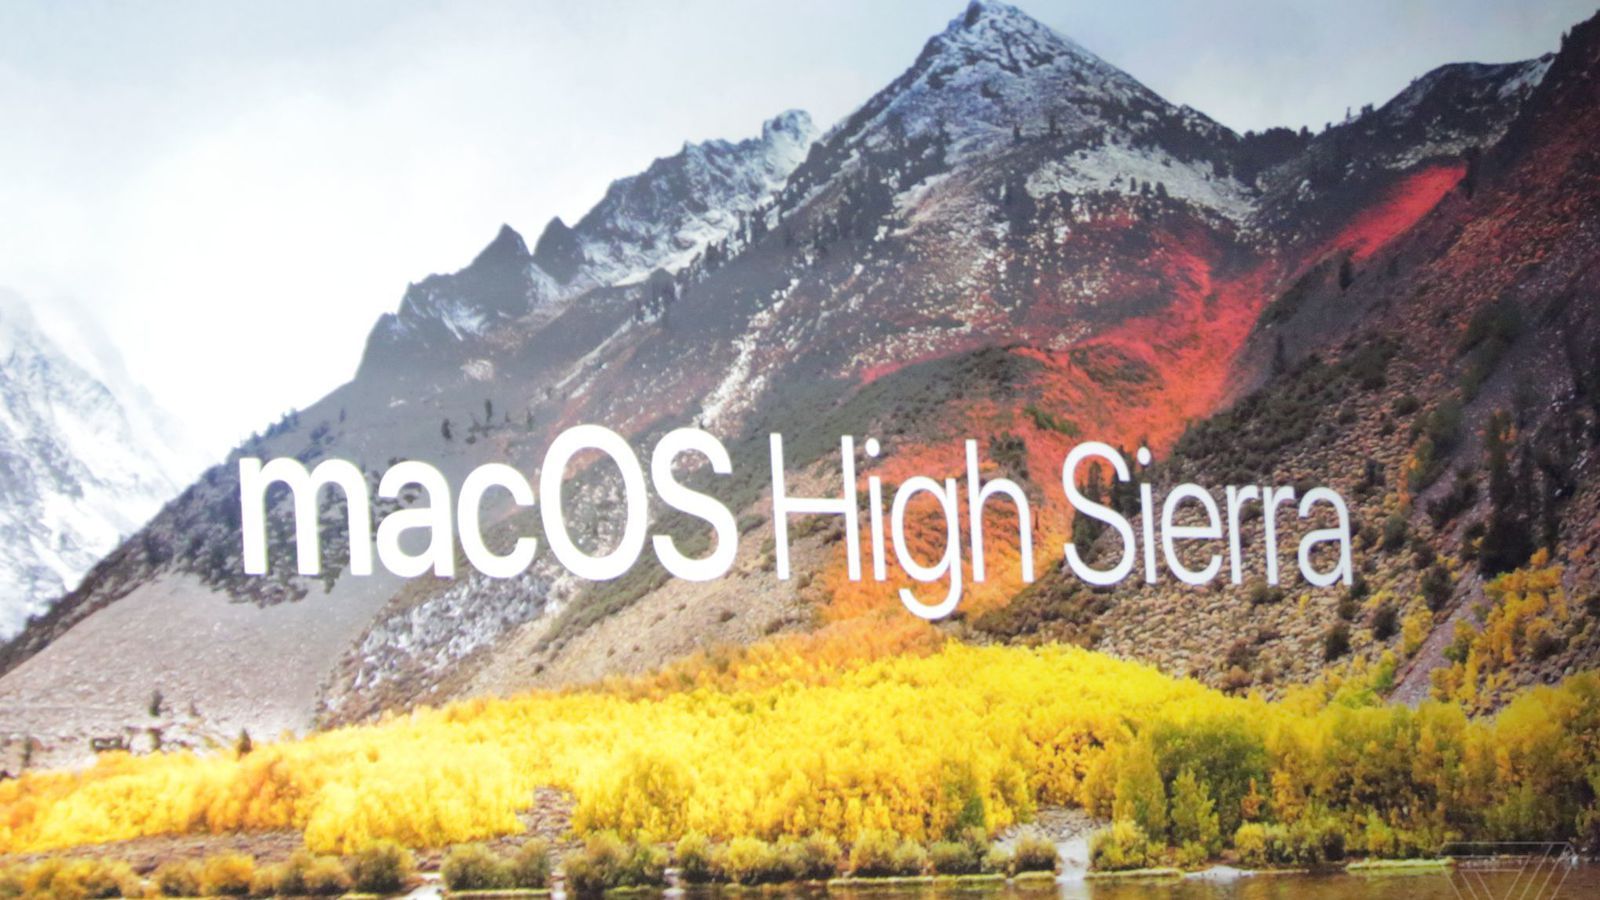 Apple's new version of macOS is called High Sierra